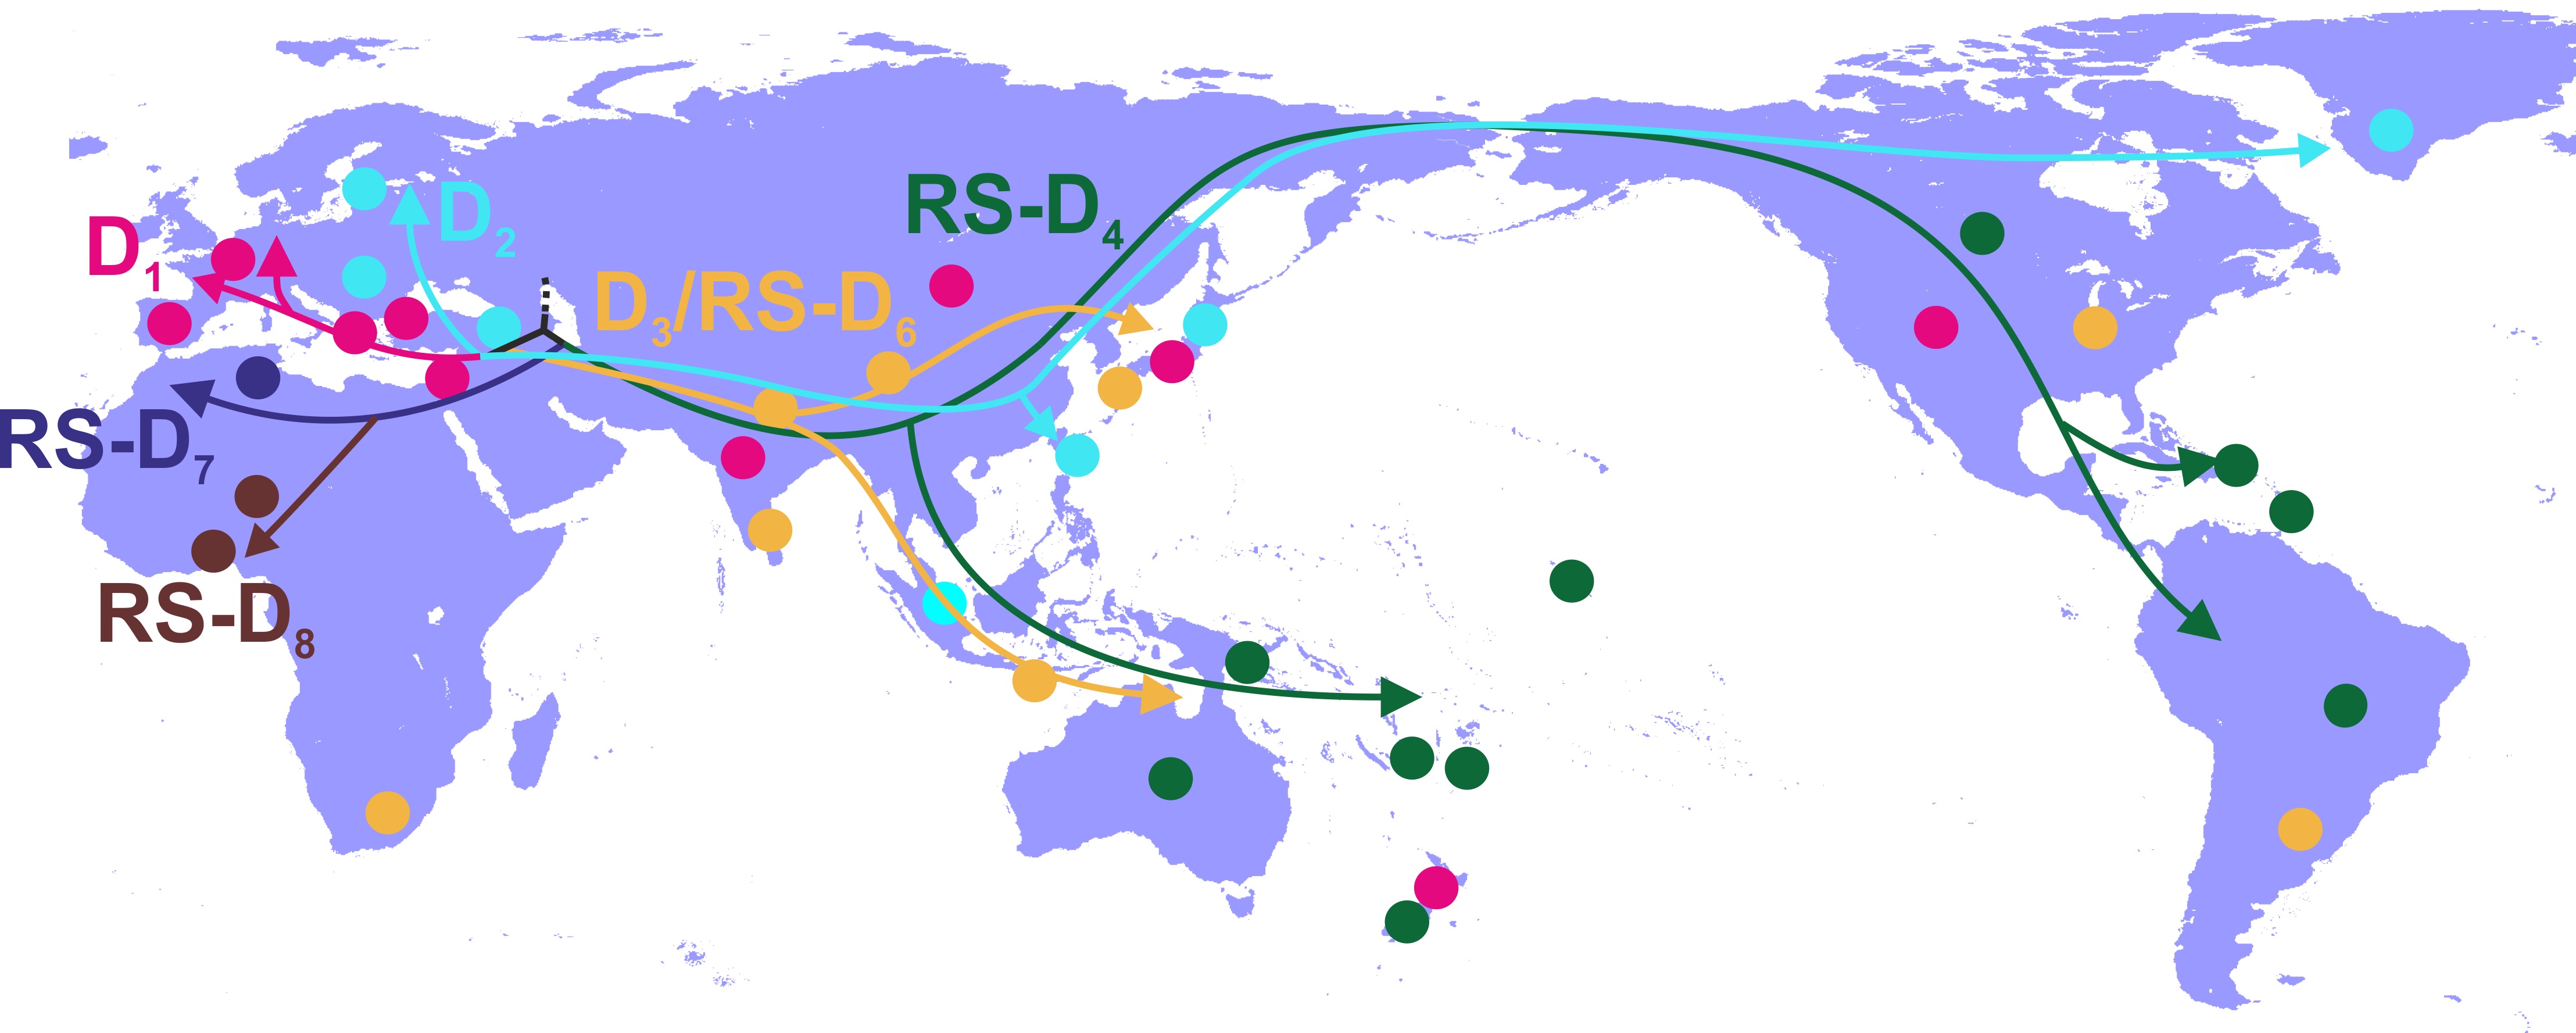 Χαρτογράφηση γεωγραφικής διασποράς γονότυπου HBV-D. Οι διαφορετικοί τύποι (υπογονότυποι) του HBV-D και μονοπάτια διασποράς αναπαρίστανται με διαφορετικά χρώματα.  Οι χρωματισμένοι κύκλοι αντιστοιχούν στις γεωγραφικές περιοχές που οι αντίστοιχοι υπογόνοτυποι παρουσιάζουν υψηλά ποσοστά.